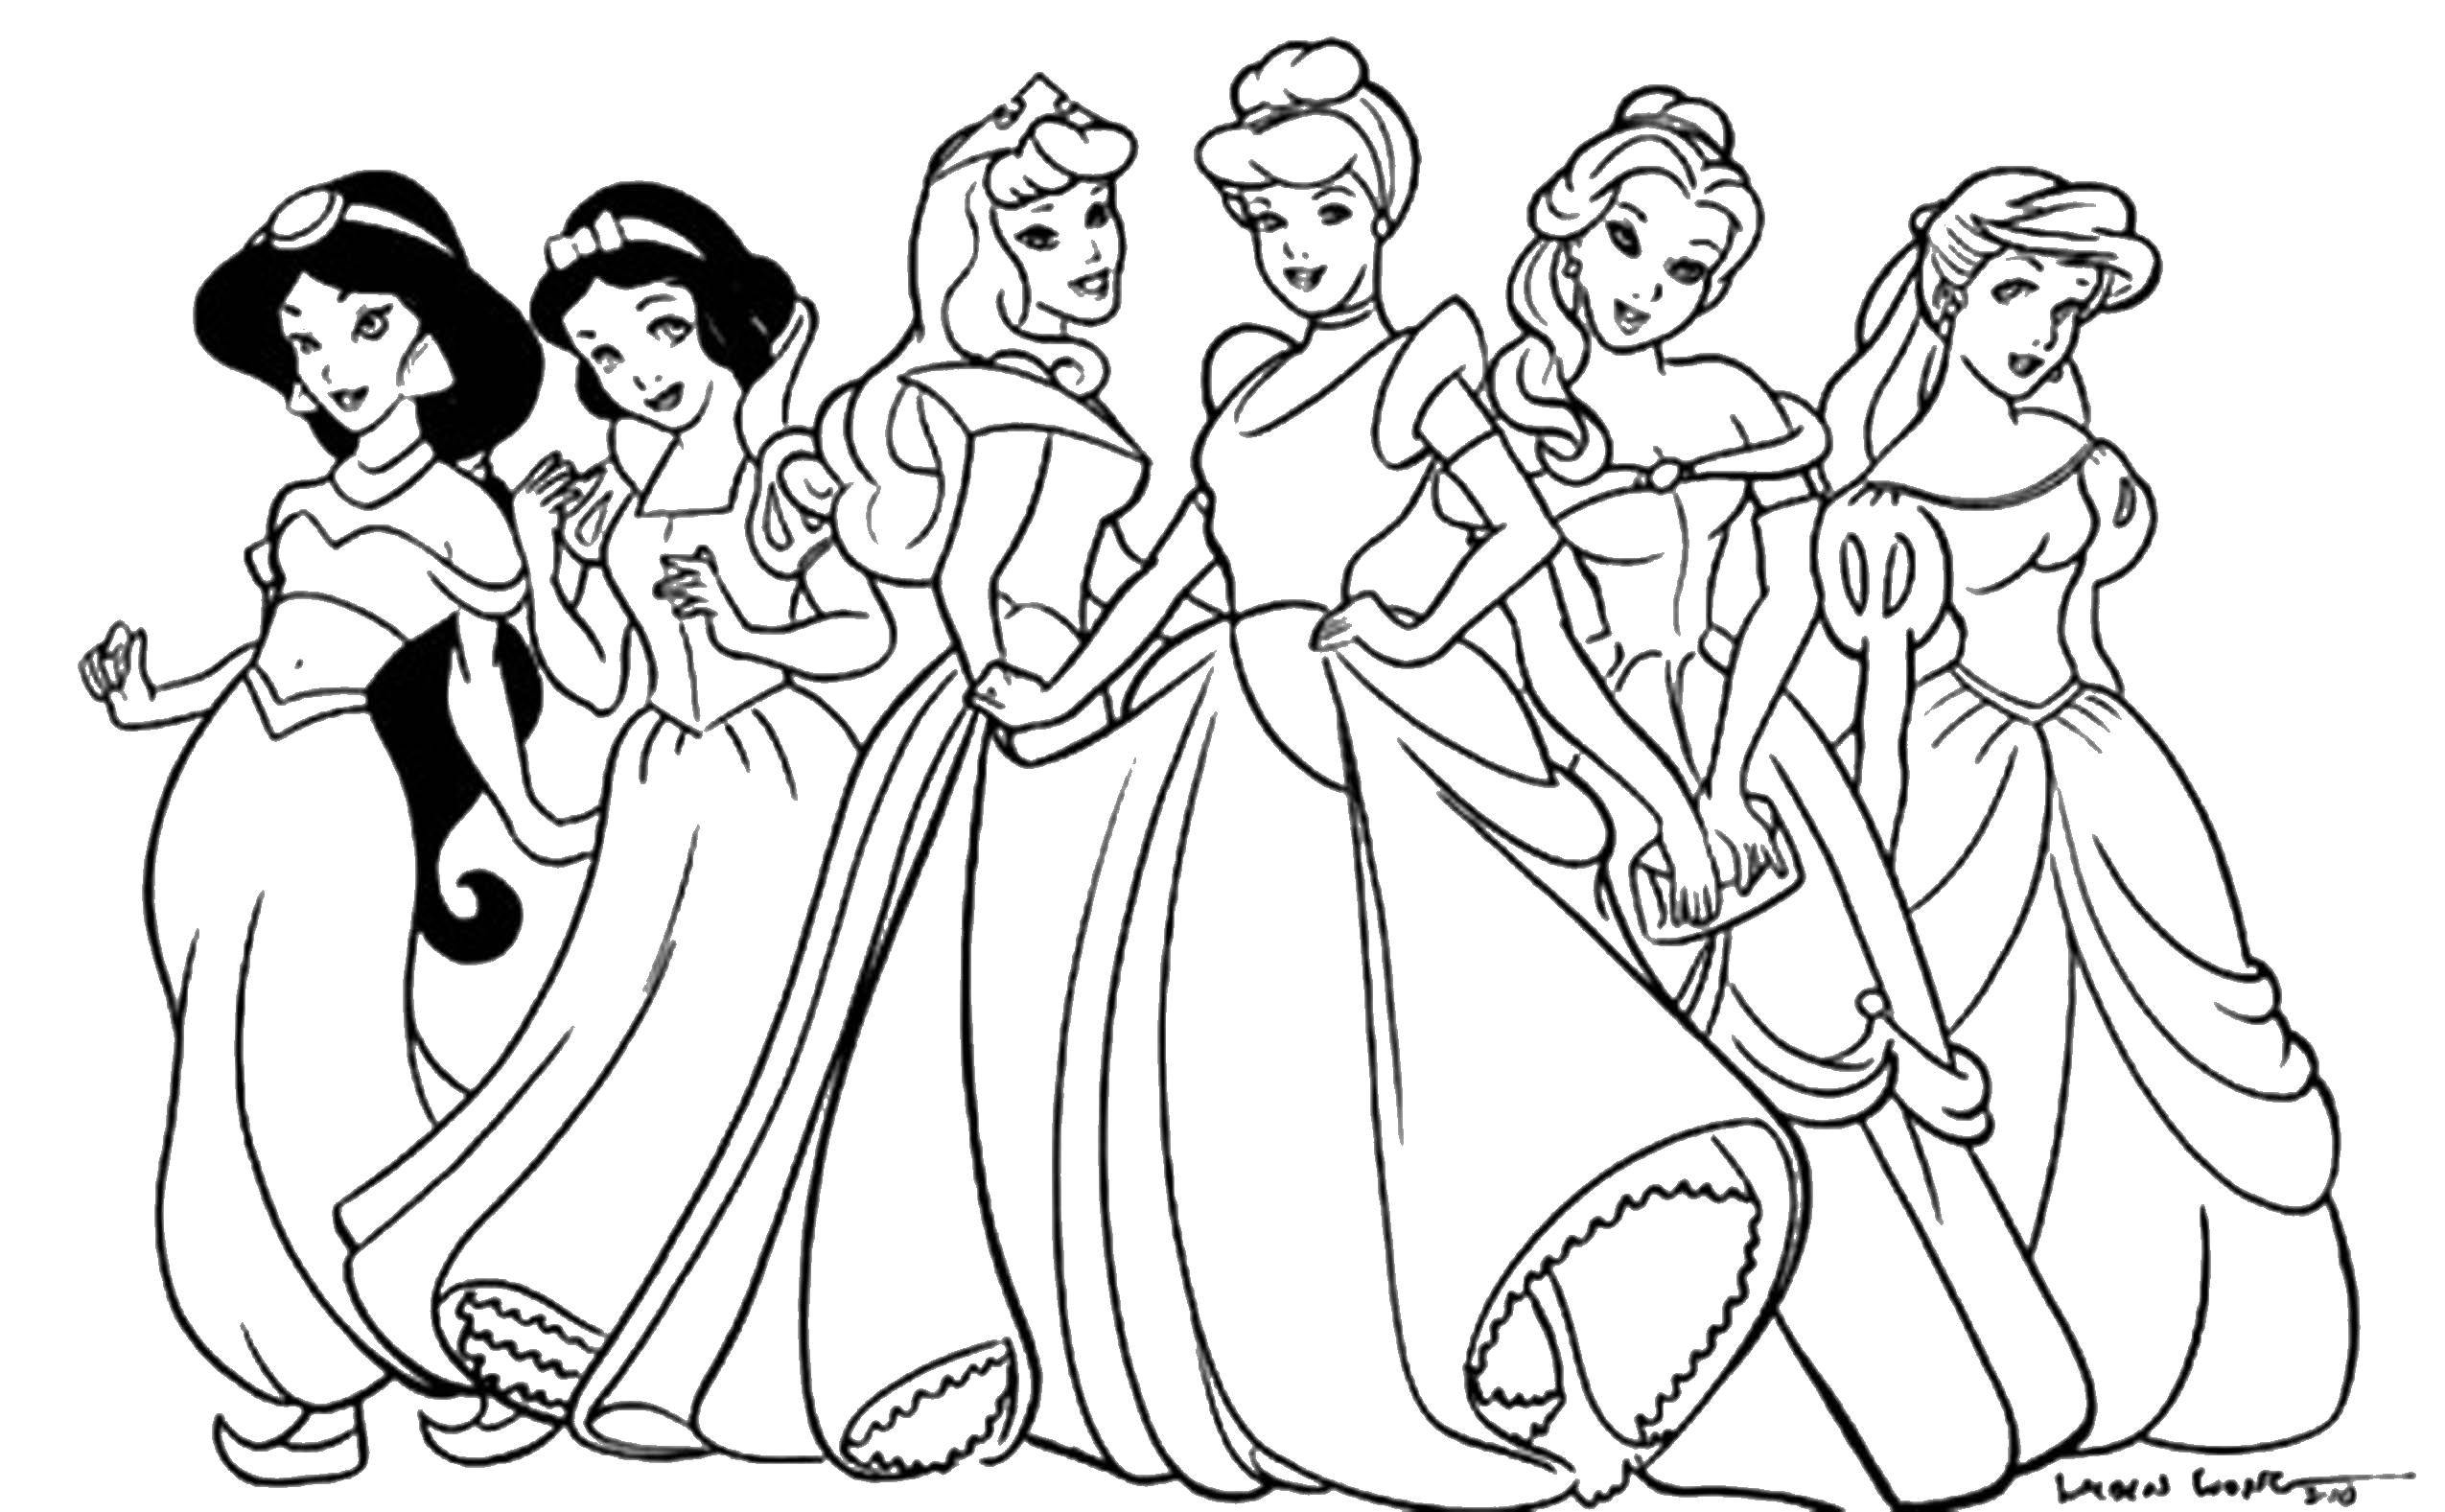 Опис: розмальовки  Діснеївські принцесски. Категорія: Діснеївські розмальовки. Теги:  Дісней, принцеса.